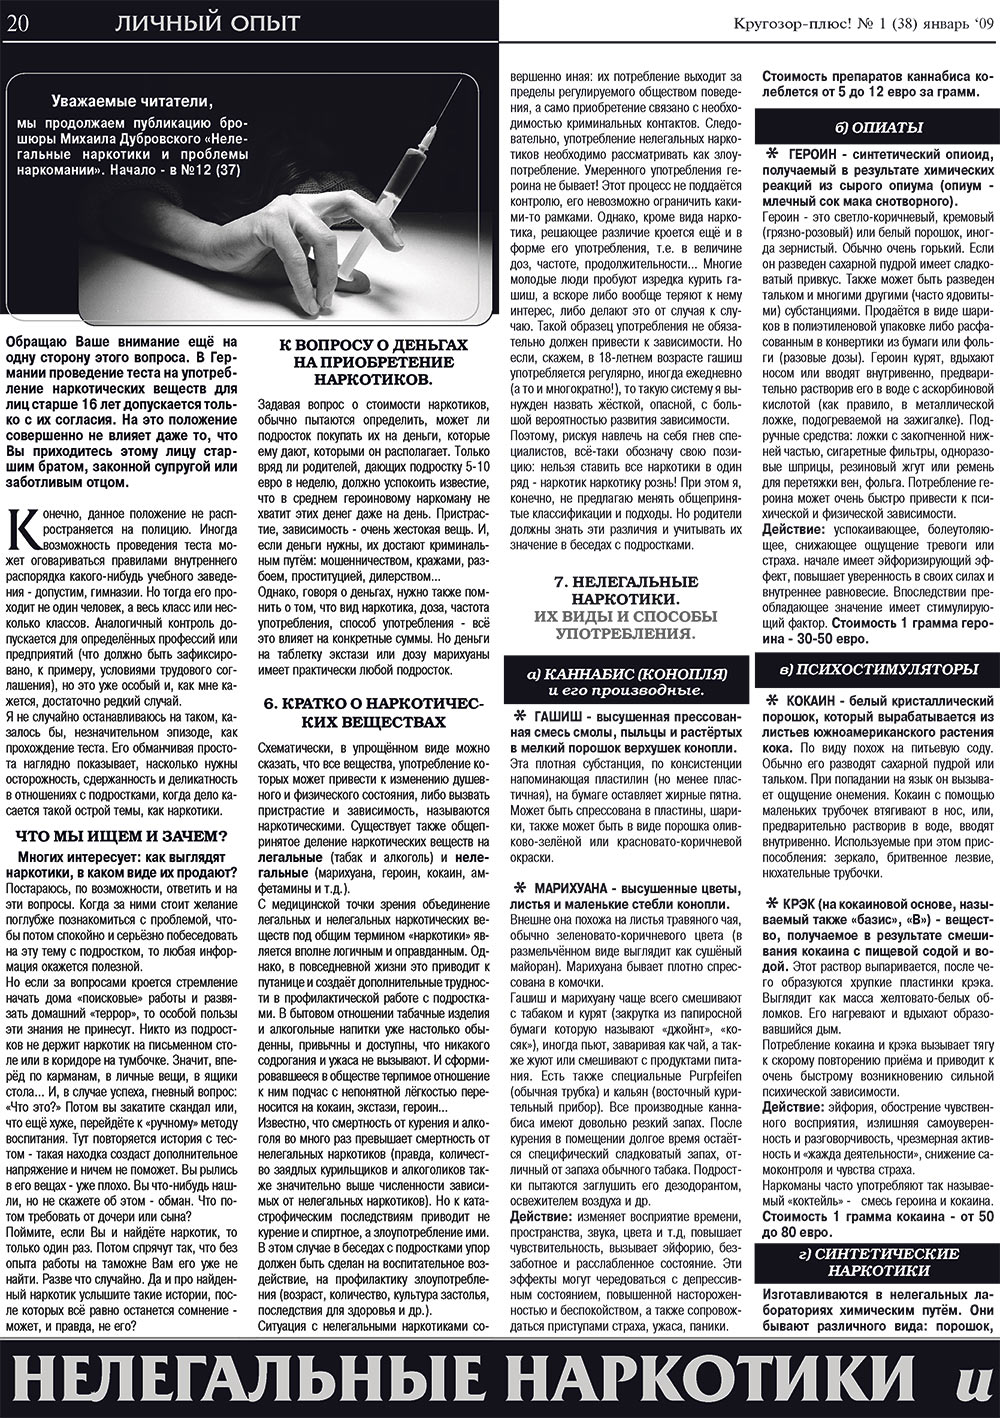 Кругозор плюс!, газета. 2009 №1 стр.20